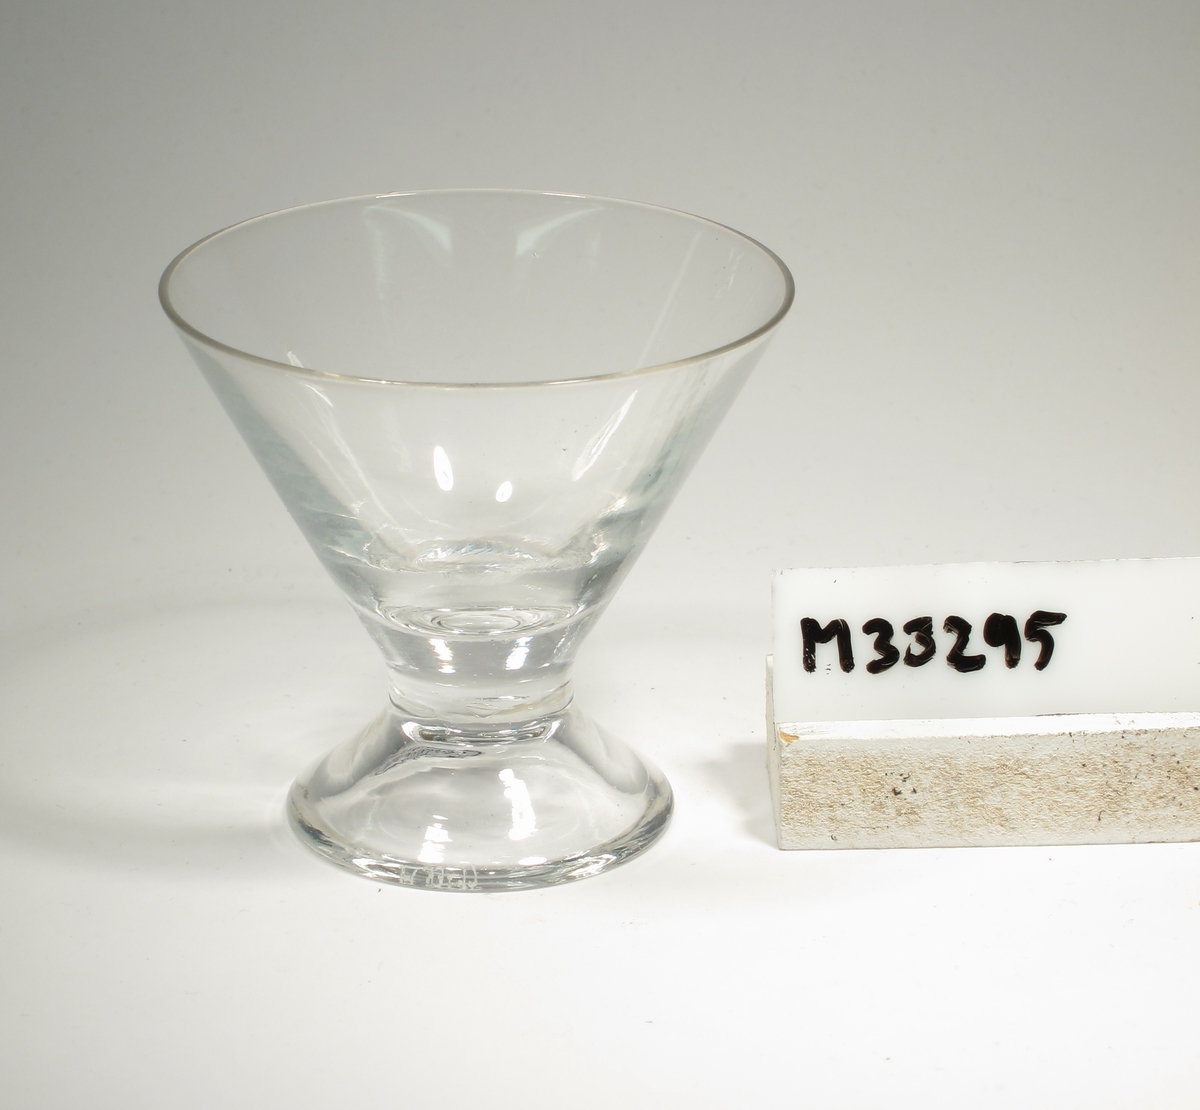 Likörglas med konisk kupa och påklippt ben. 
Etikett: Rektangulär med rundade hörn, silverfärgad med blå text: "Artium"